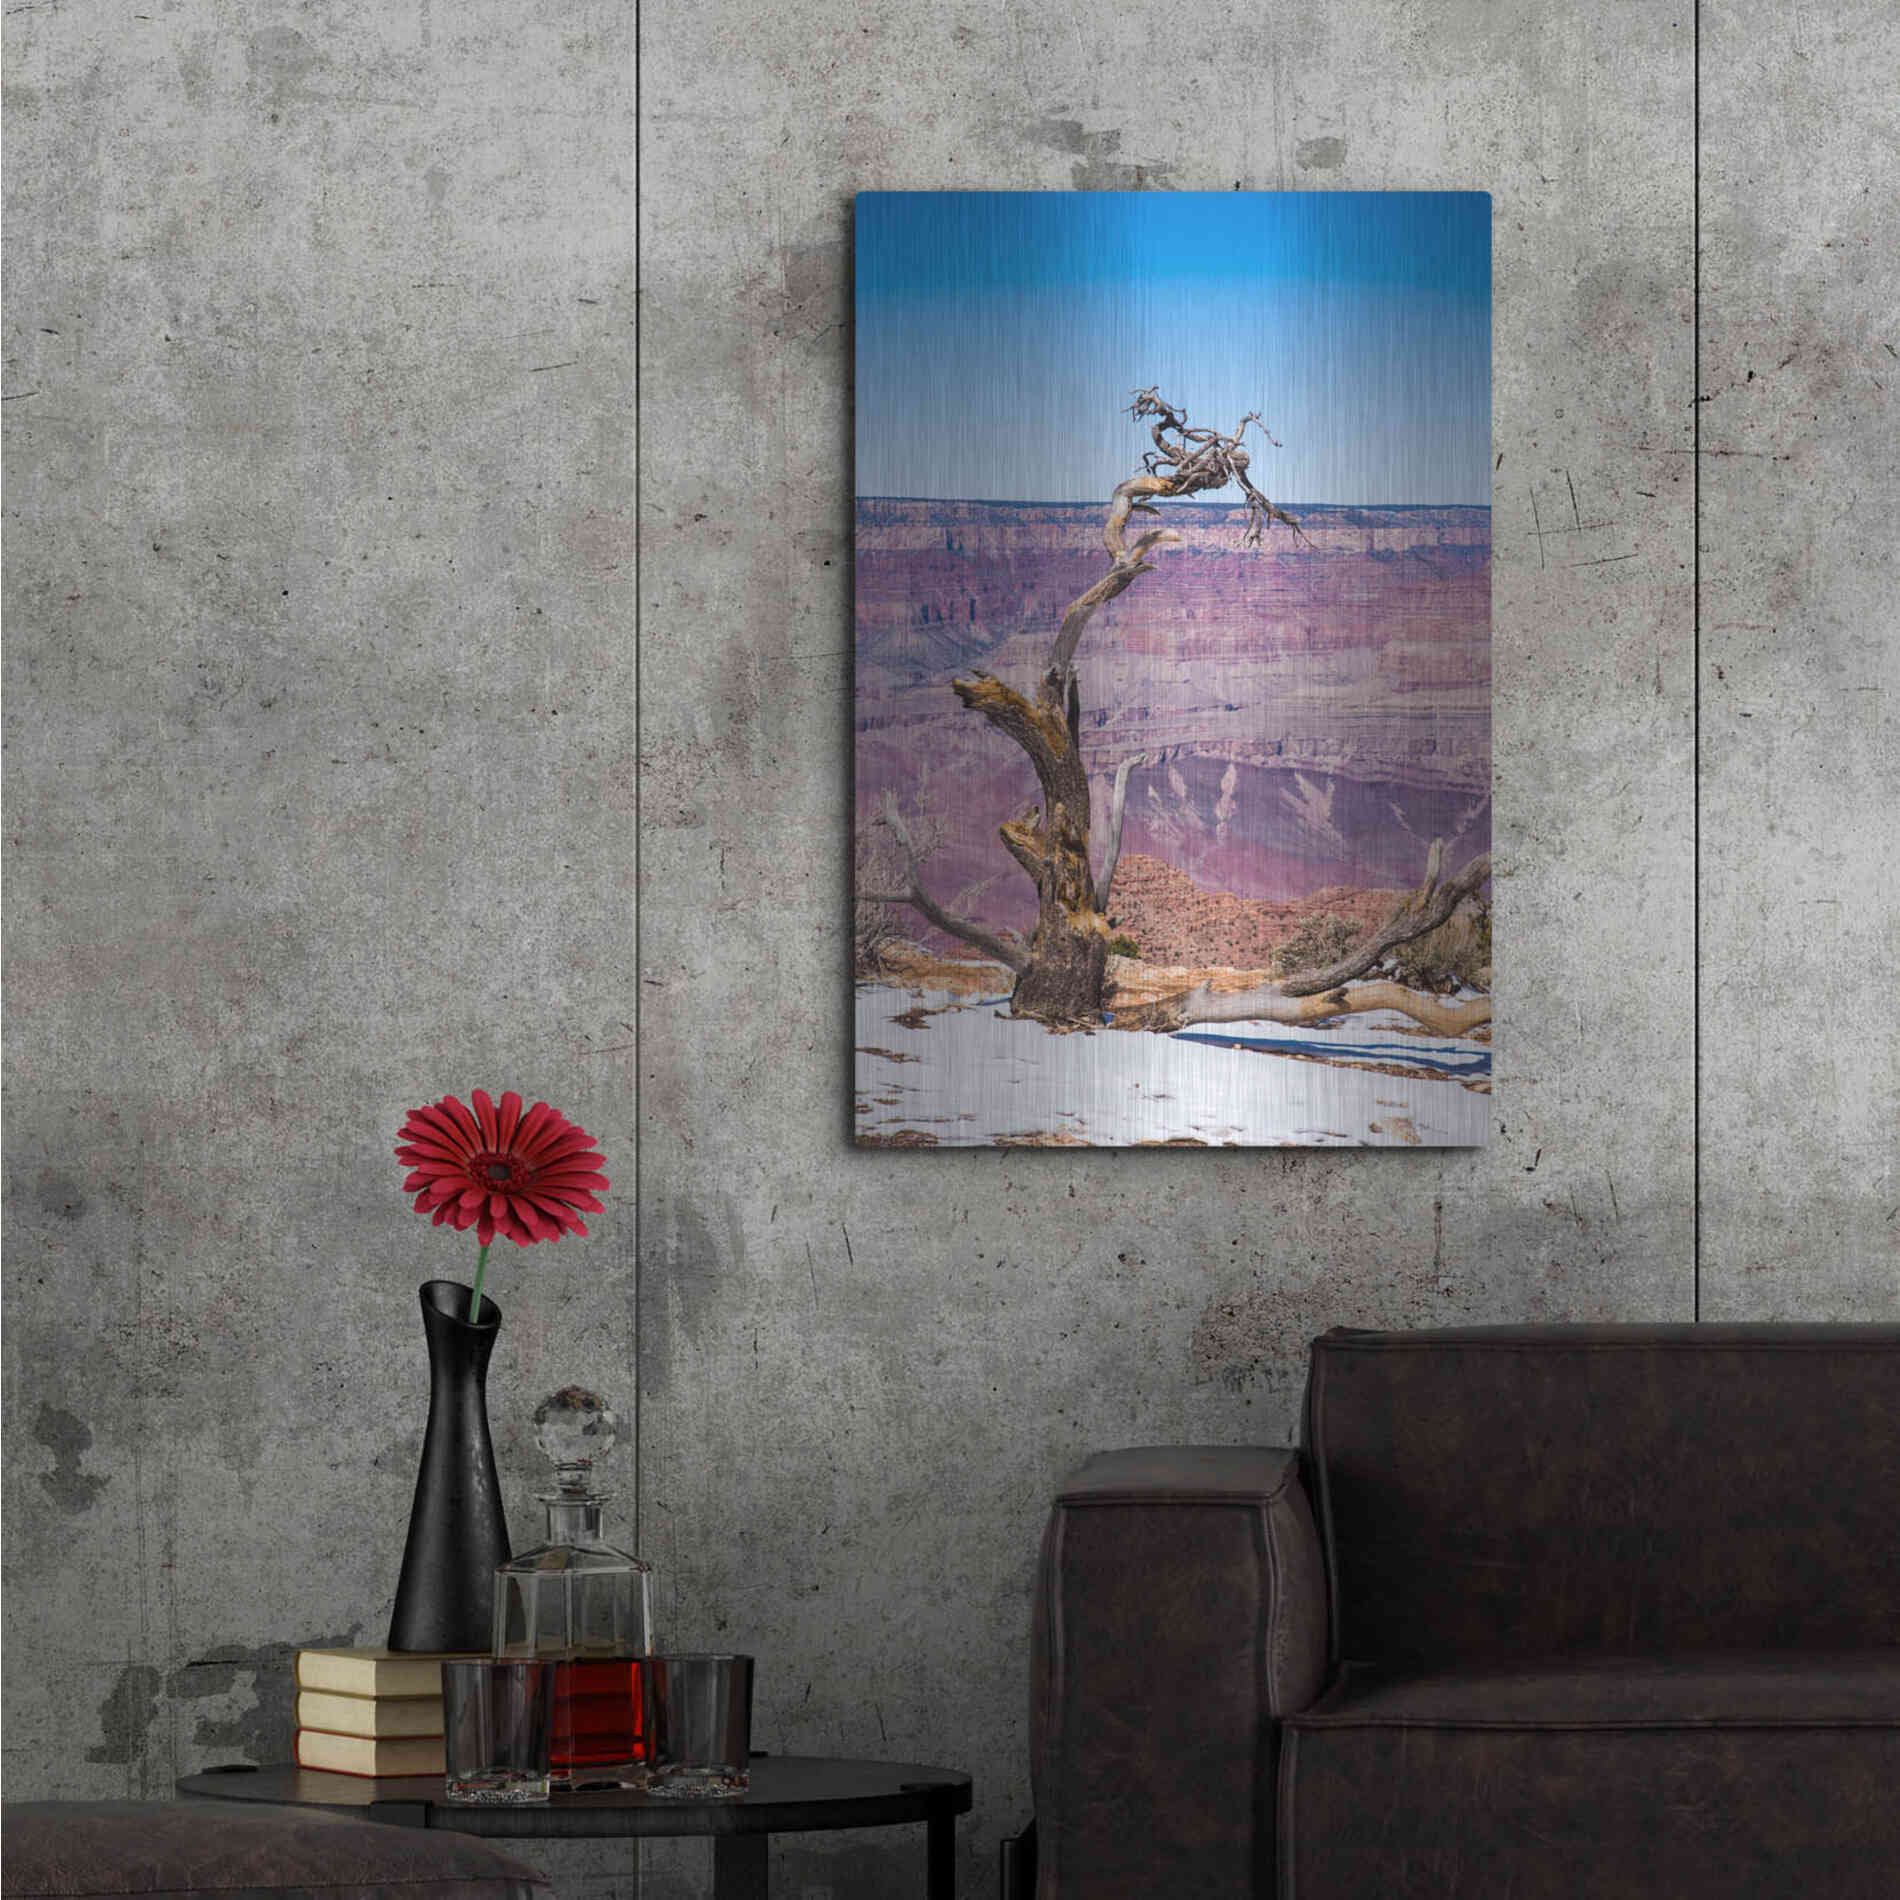 Luxe Metal Art ' Dead Tree In Grand Canyon II' by Robin Vandenabeele, Metal Wall Art,24x36